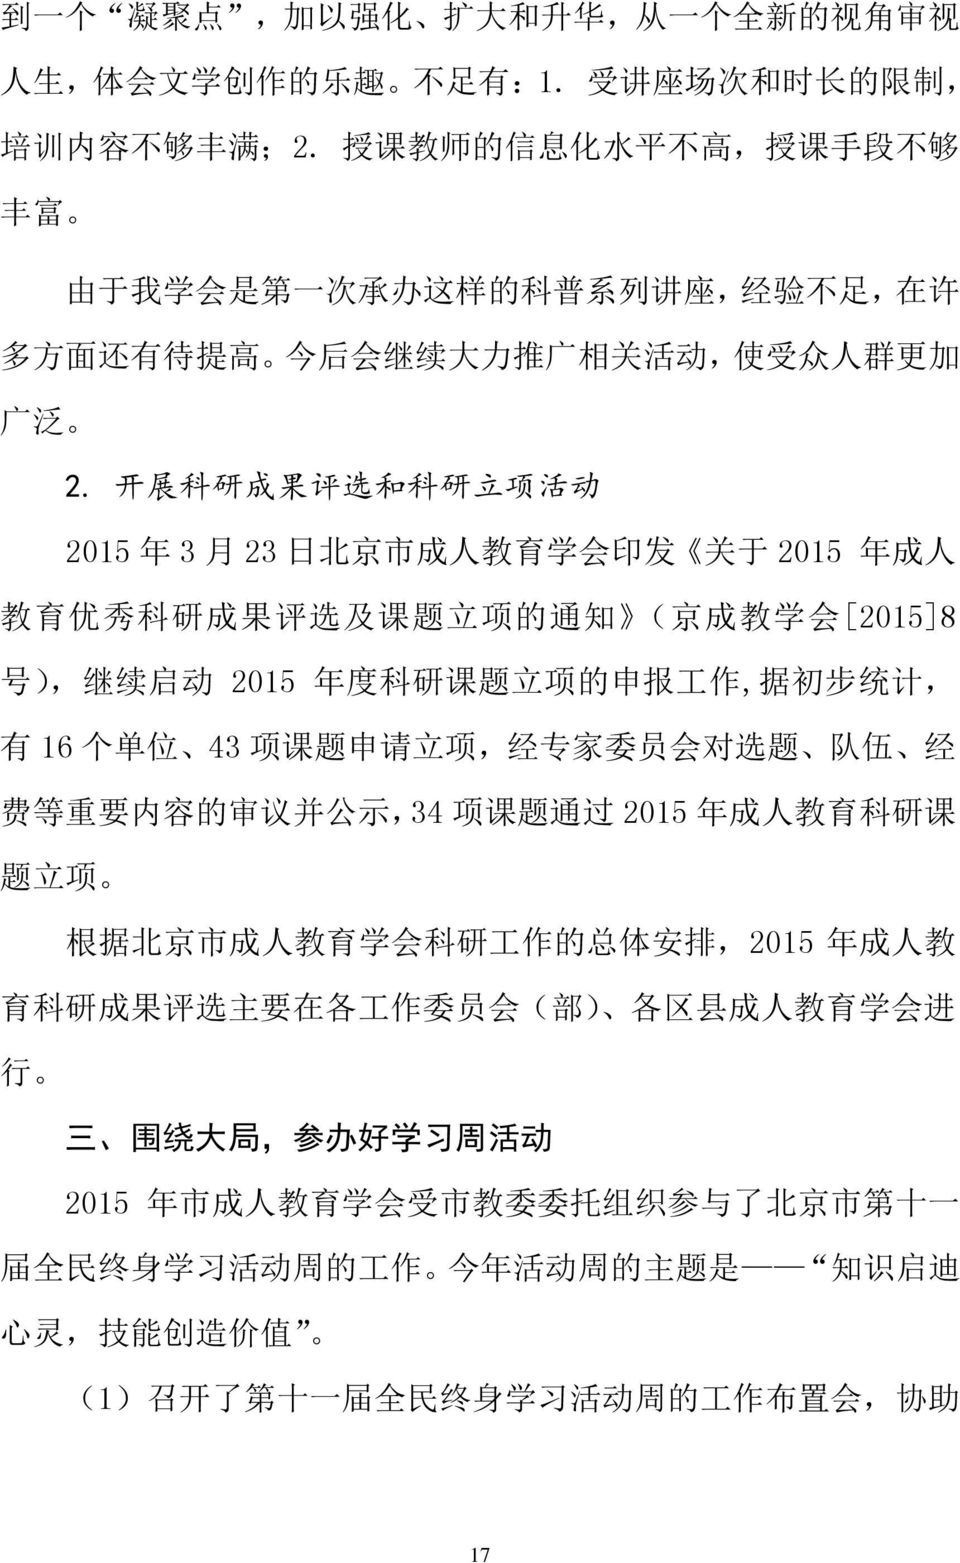 开 展 科 研 成 果 评 选 和 科 研 立 项 活 动 2015 年 3 月 23 日 北 京 市 成 人 教 育 学 会 印 发 关 于 2015 年 成 人 教 育 优 秀 科 研 成 果 评 选 及 课 题 立 项 的 通 知 ( 京 成 教 学 会 [2015]8 号 ), 继 续 启 动 2015 年 度 科 研 课 题 立 项 的 申 报 工 作, 据 初 步 统 计, 有 16